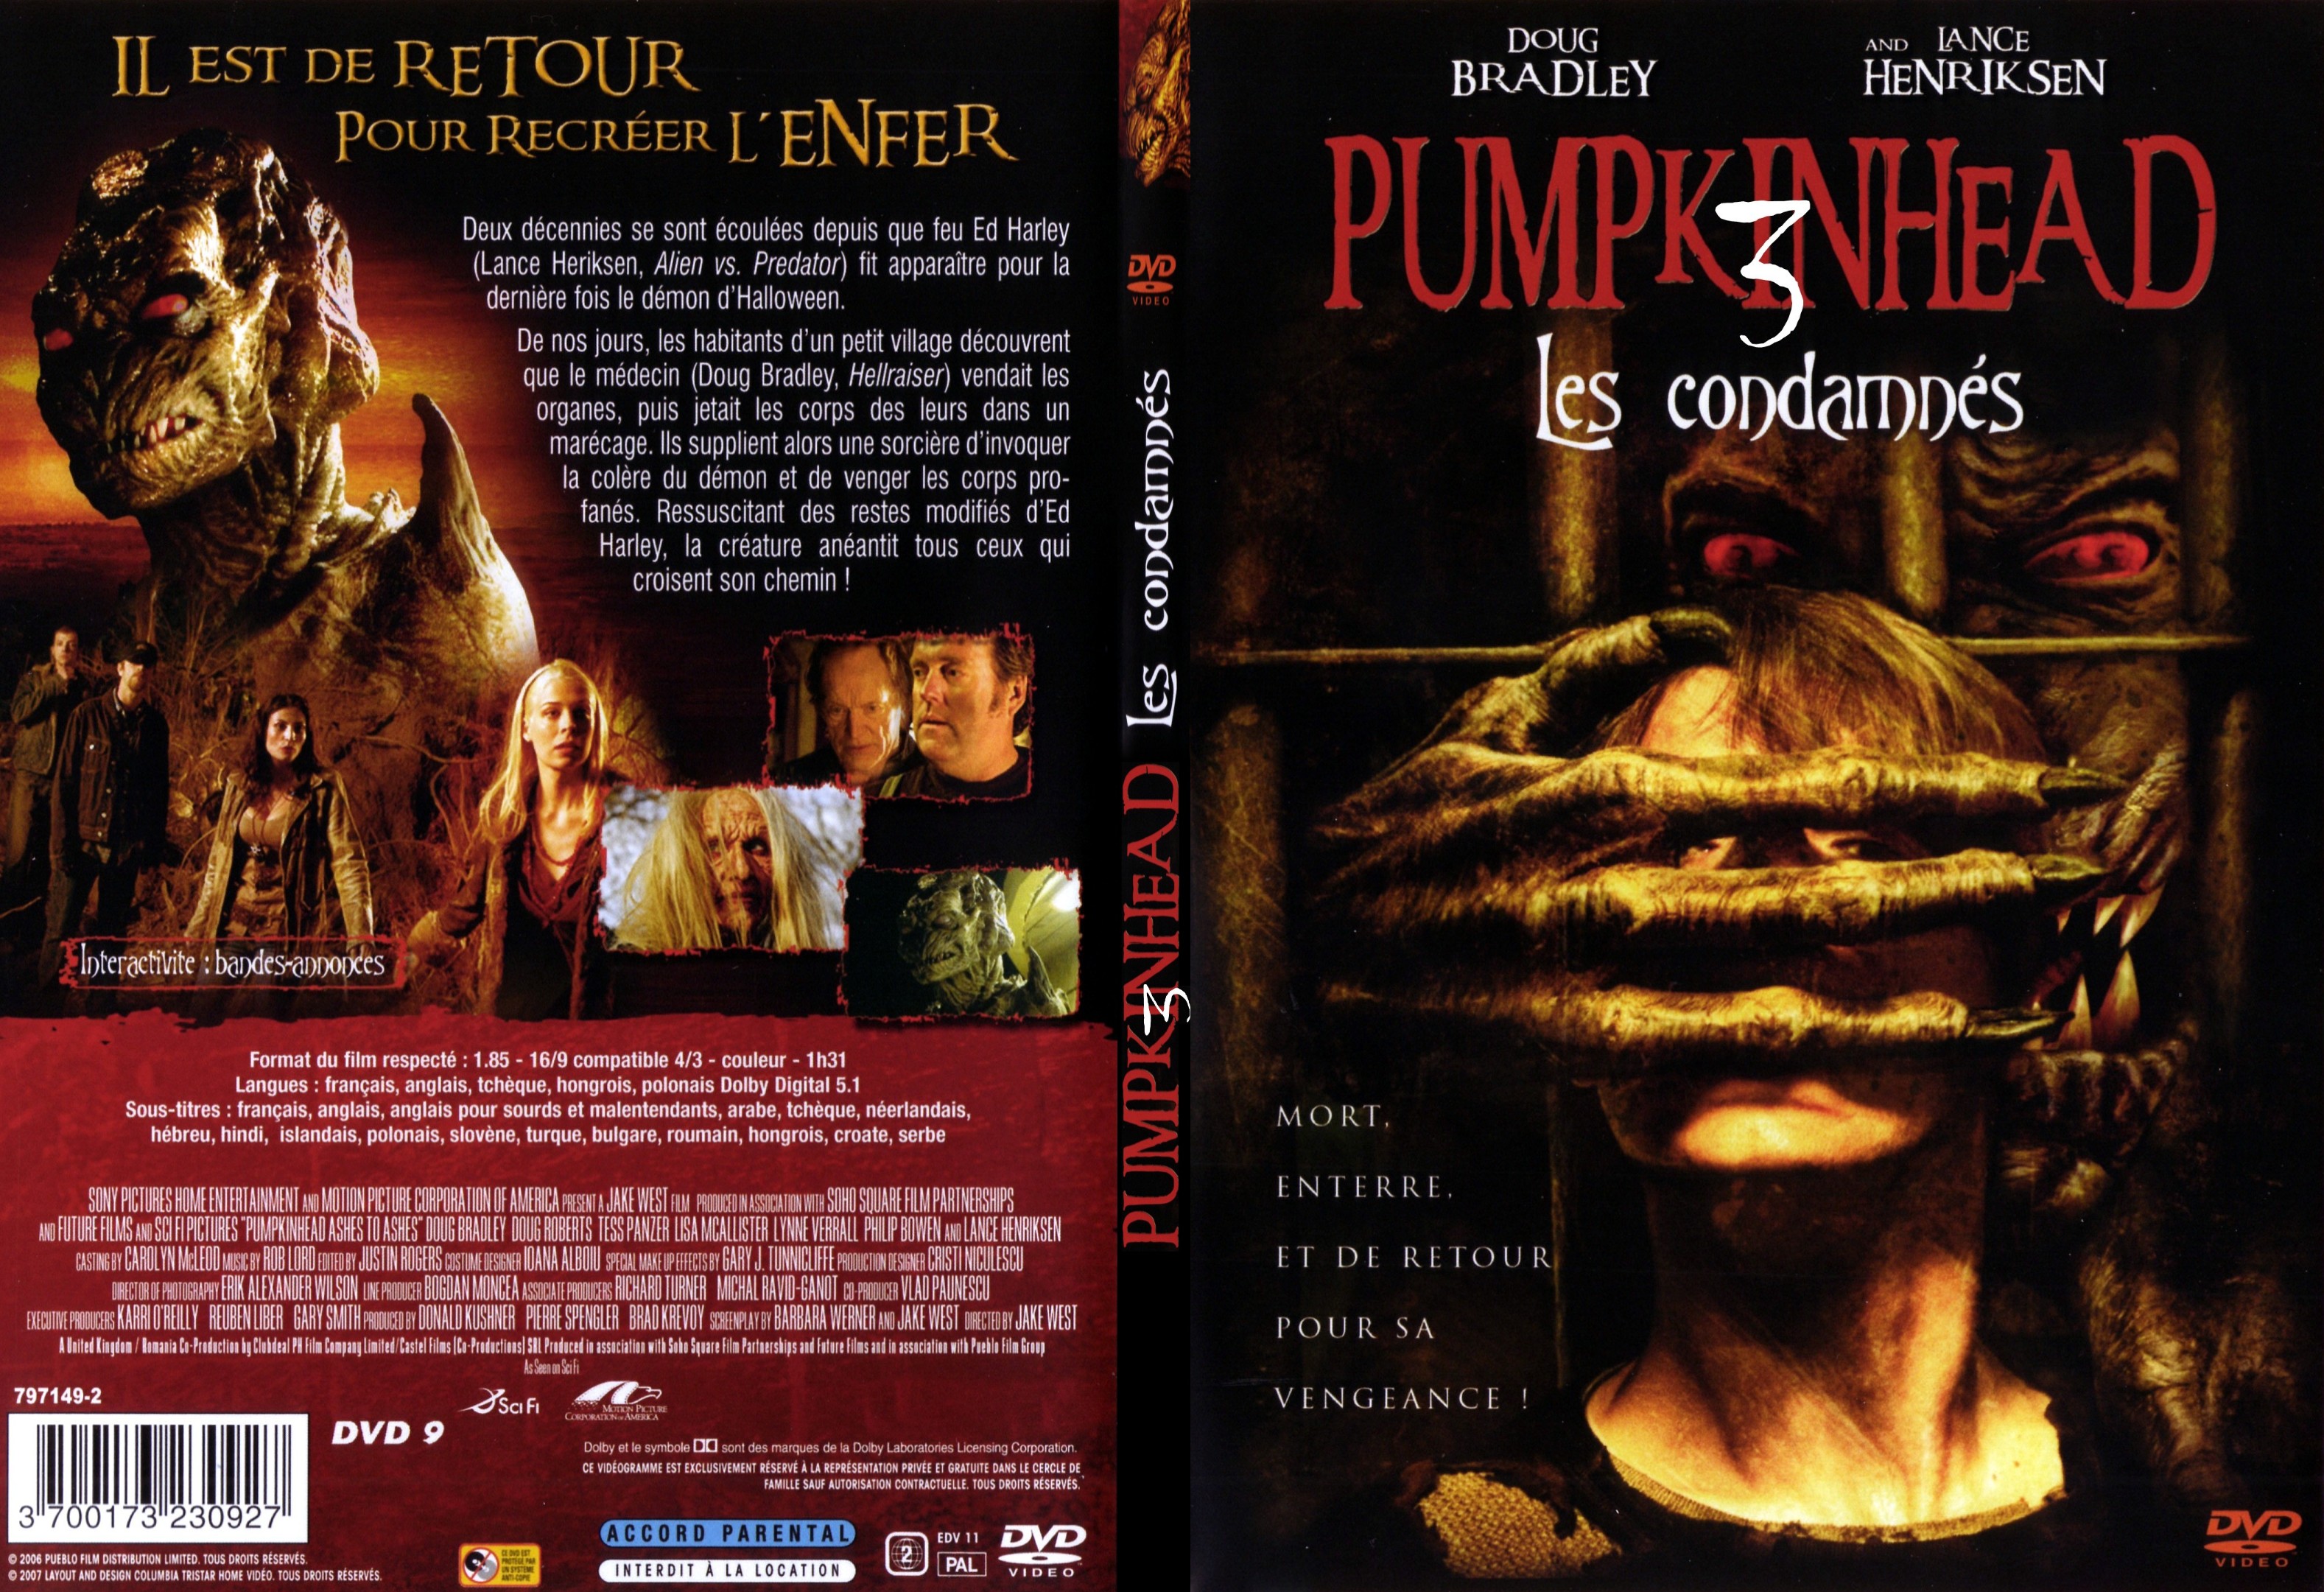 Jaquette DVD Pumpkinhead 3 les condamns - SLIM